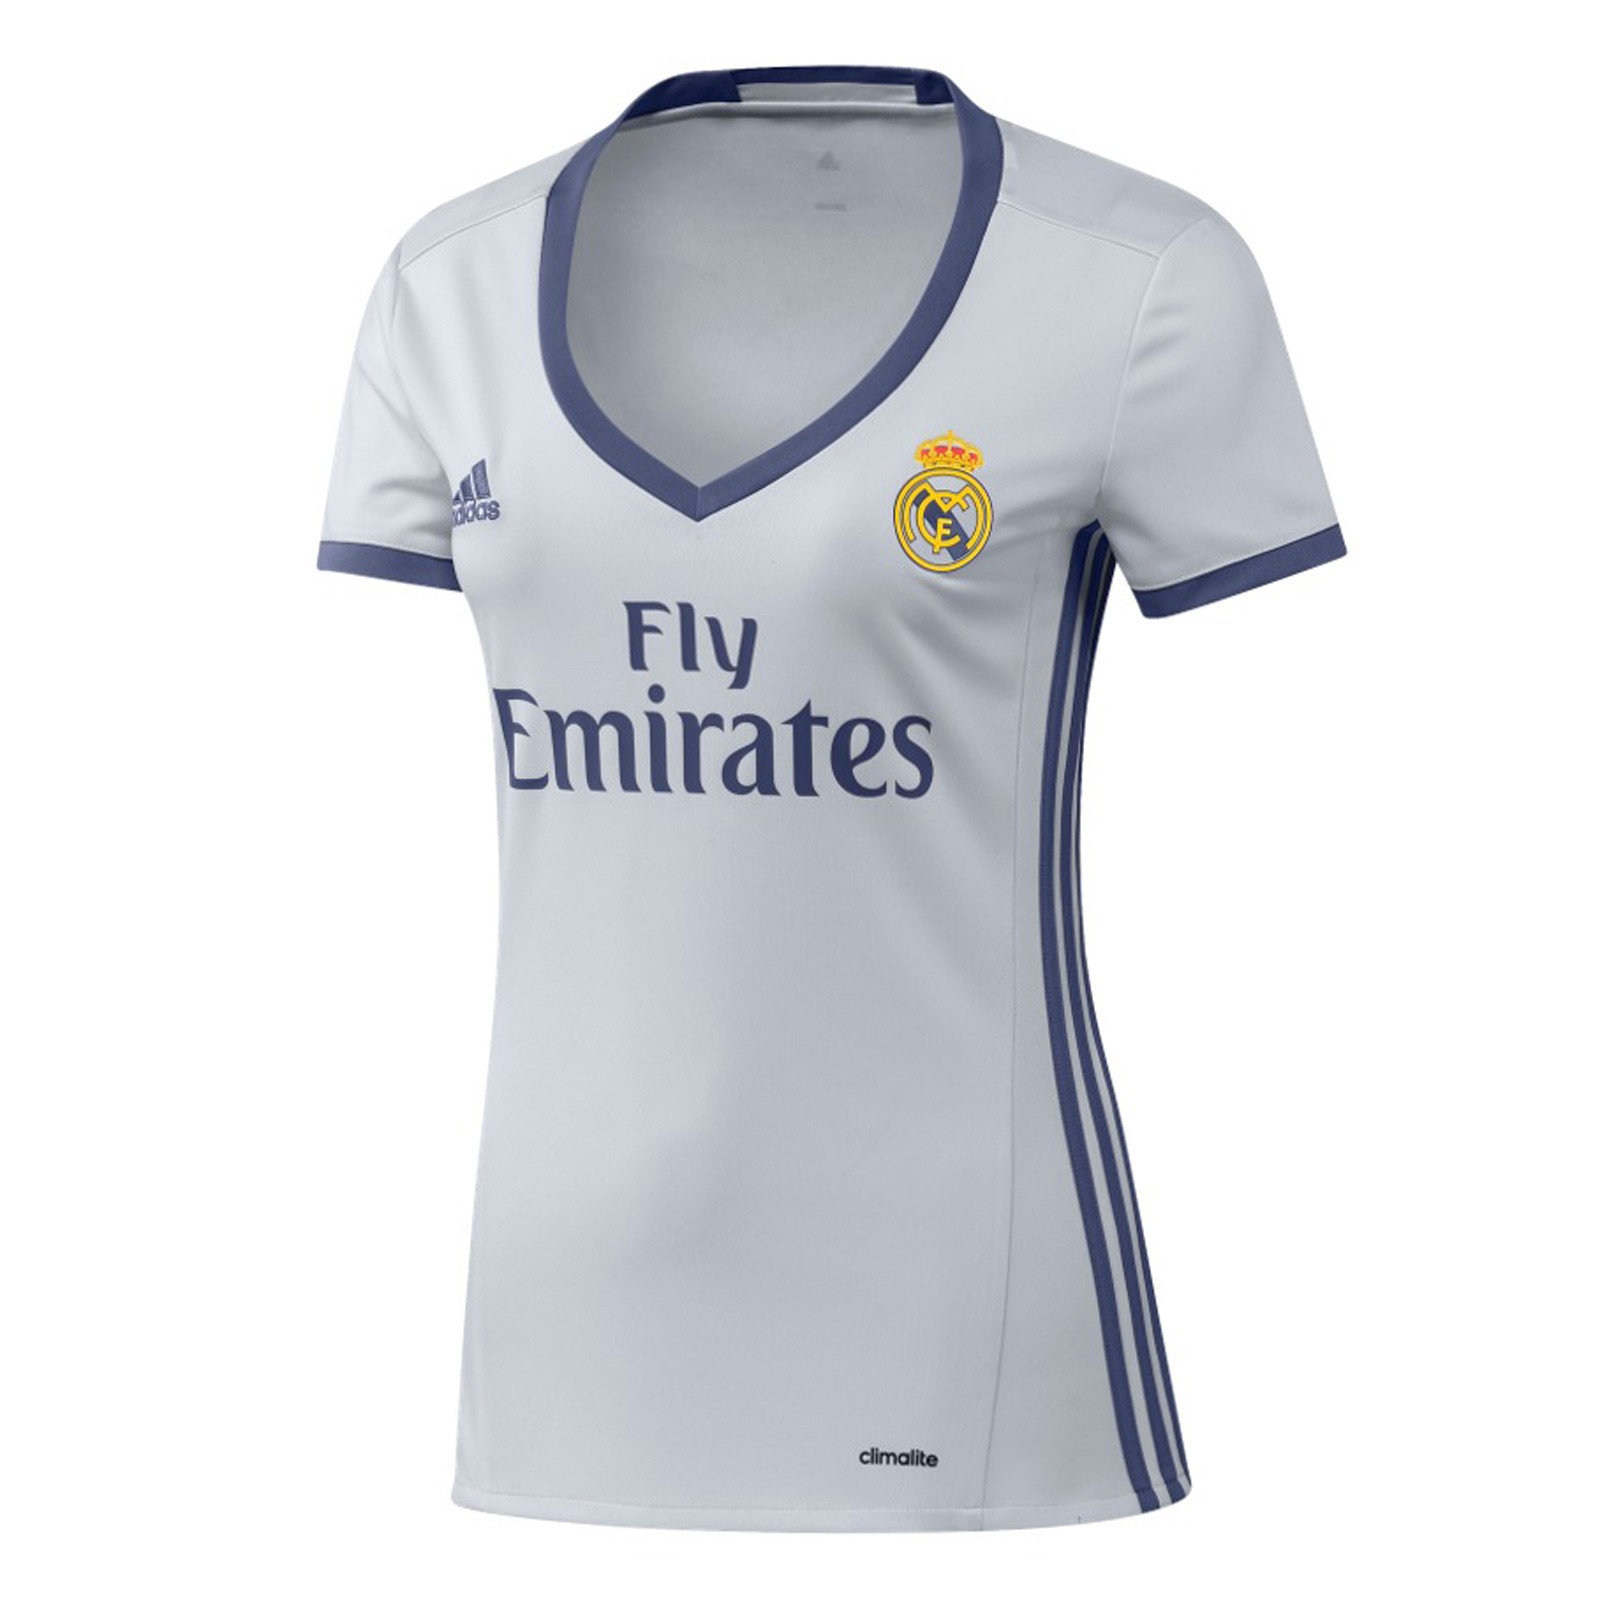 皇家马德里2016-17赛季女版主场球衣